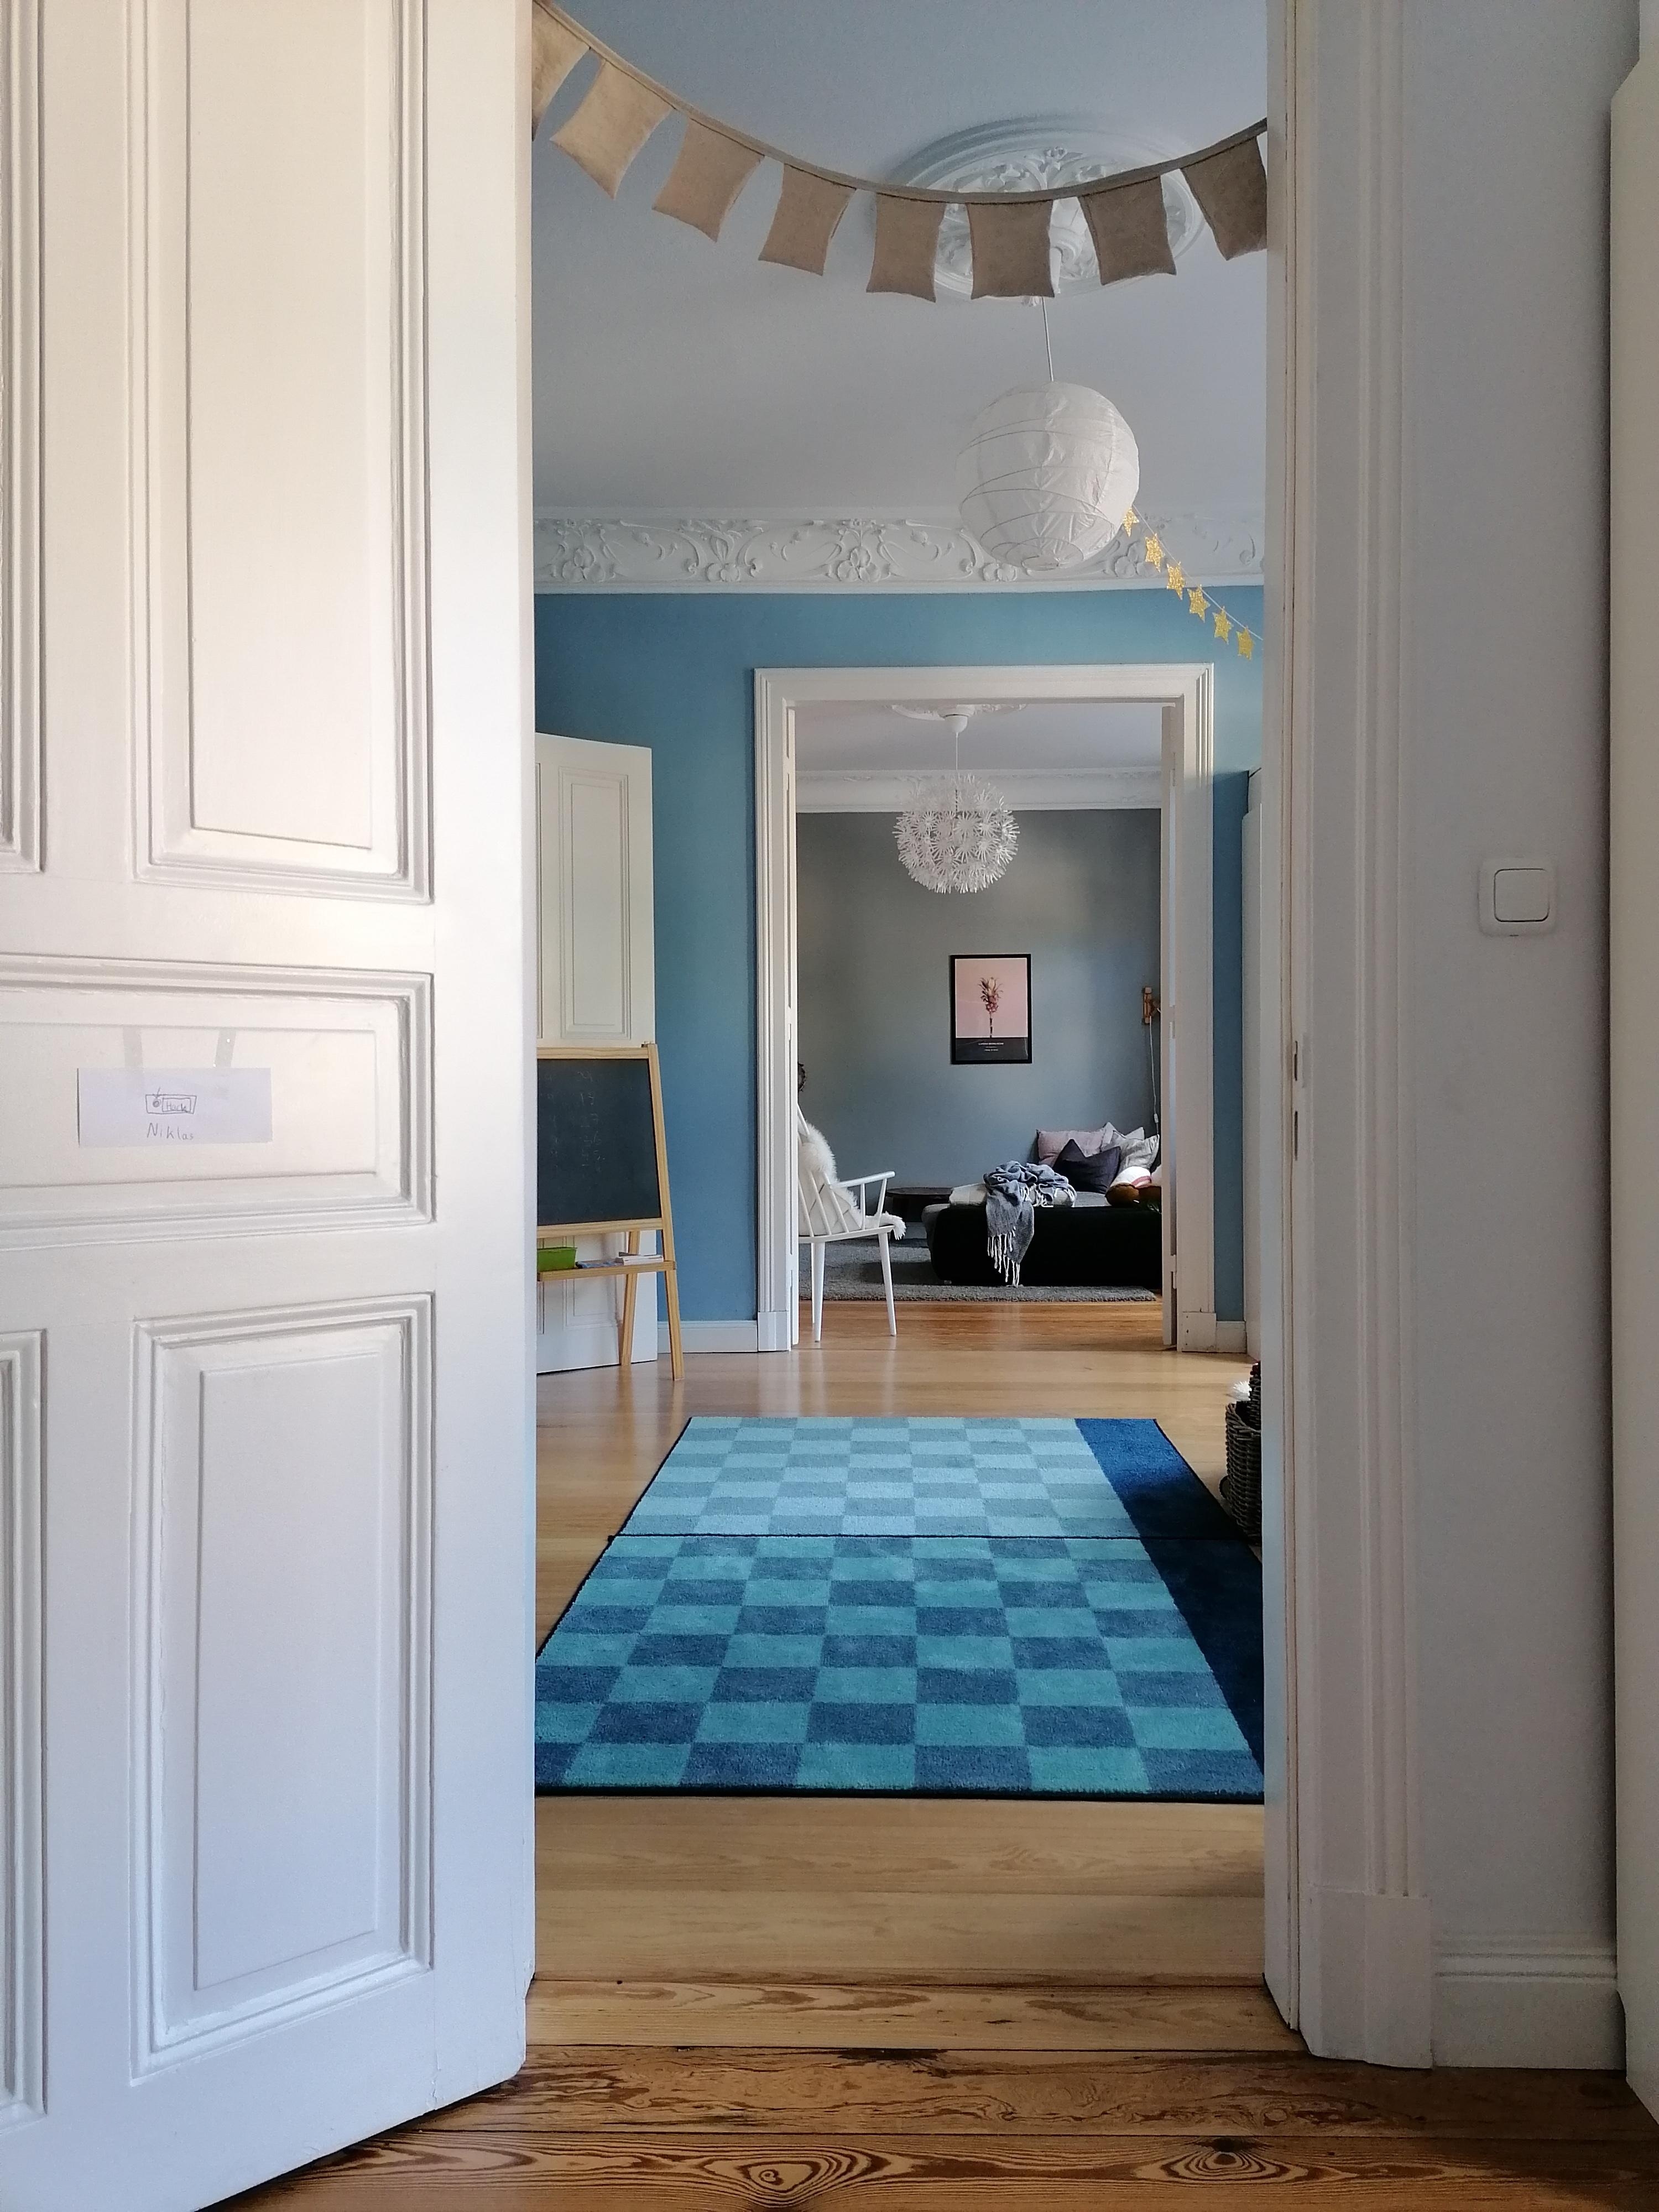 Durchblick #wohnzimmer #kinderzimmer #durchblick #altbau #altbauliebe #durchgangszimmer